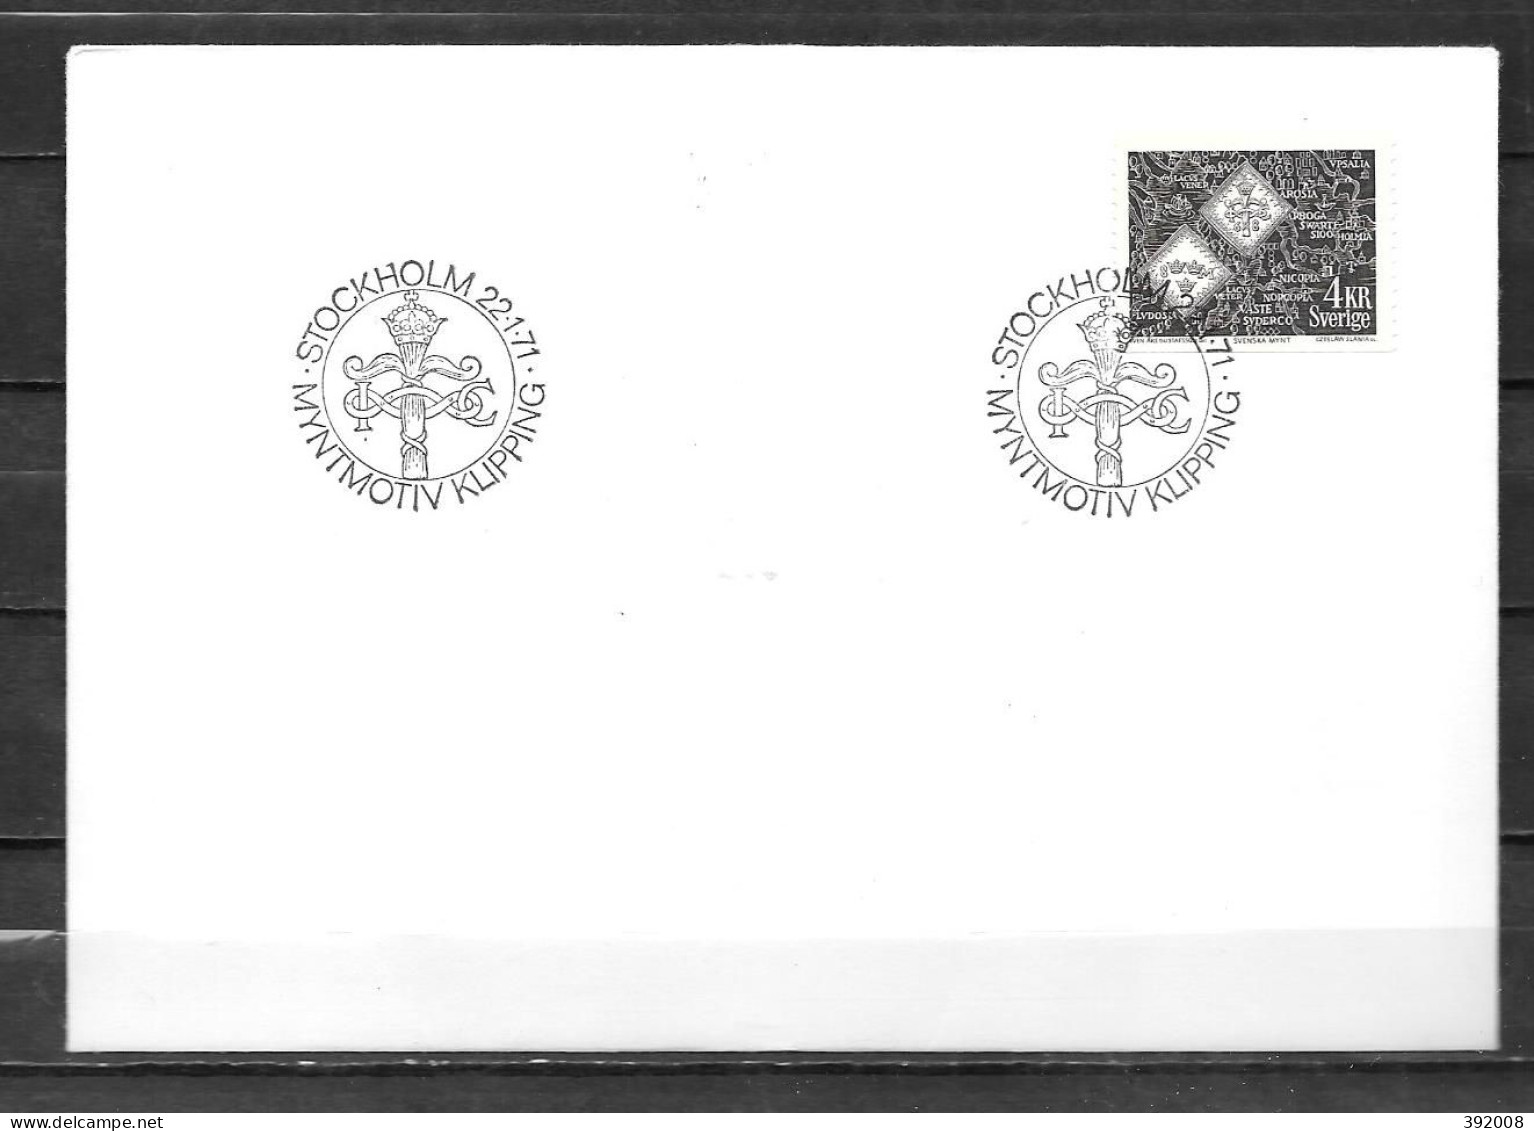 1971 - 682 - Motif Numismatique - 2 - FDC